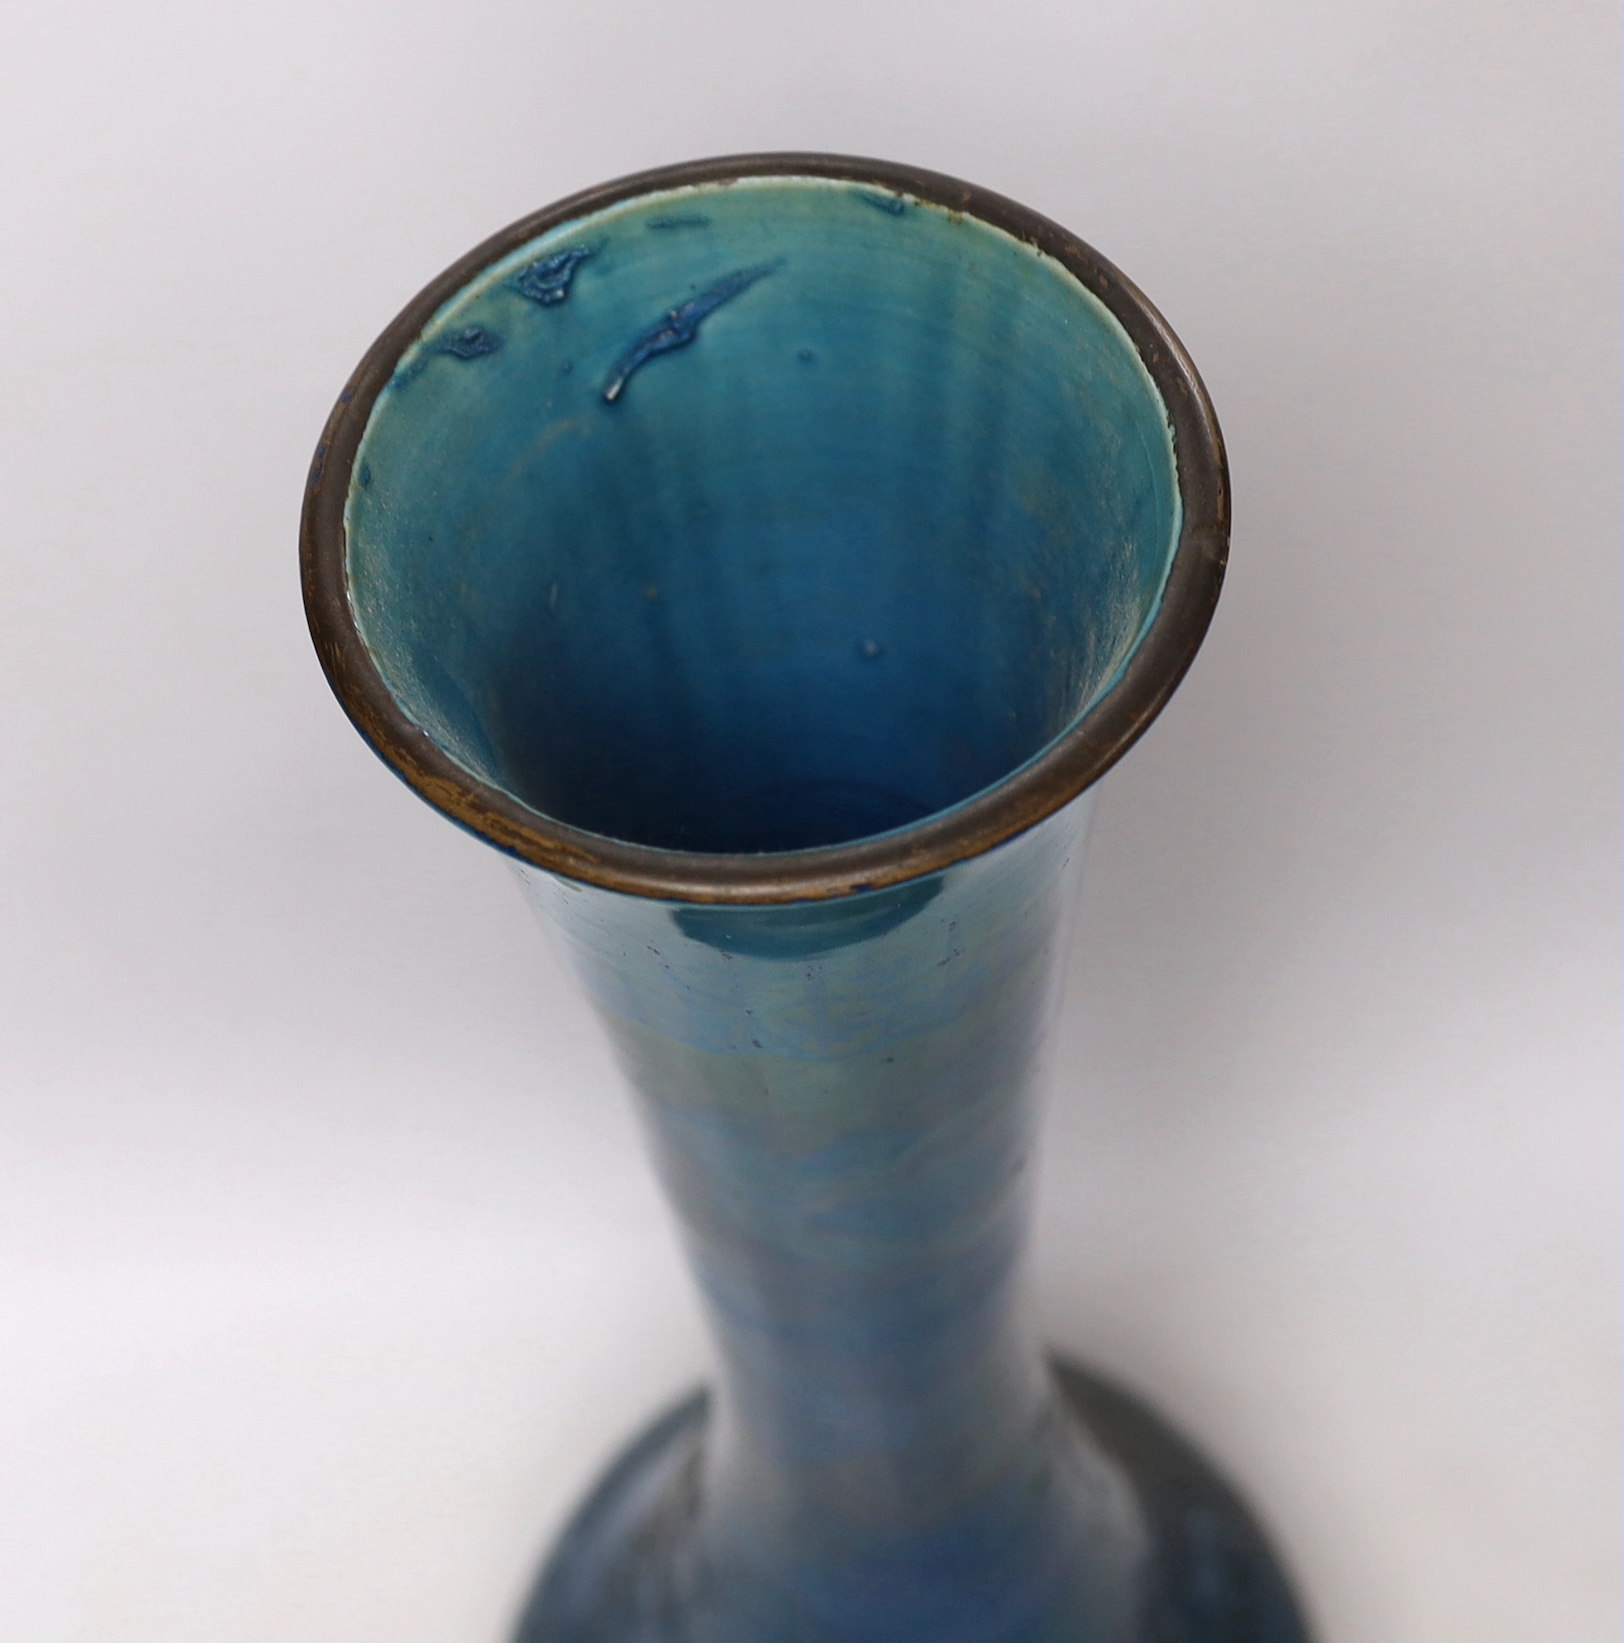 A large Japanese turquoise glazed vase, 59cm high